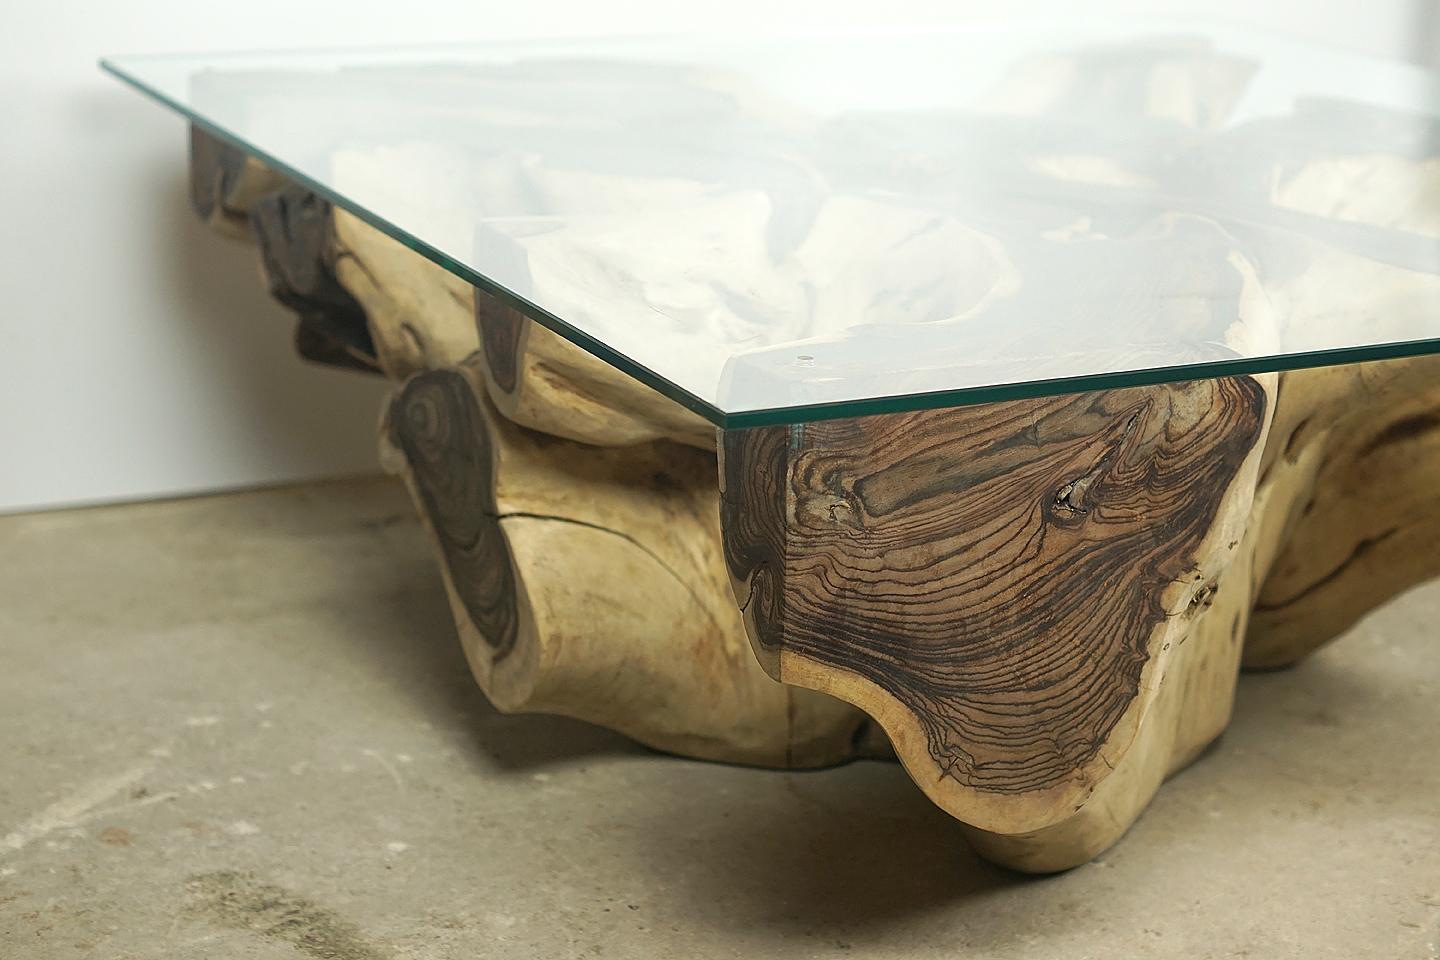 Table basse de sonokiling root

Magnifique table basse organique en racine de sonokiling avec de superbes détails d'érosion, avec une plaque de verre trempé (10mm) sur le dessus. L'huilage de la racine lui confère une finition particulière et